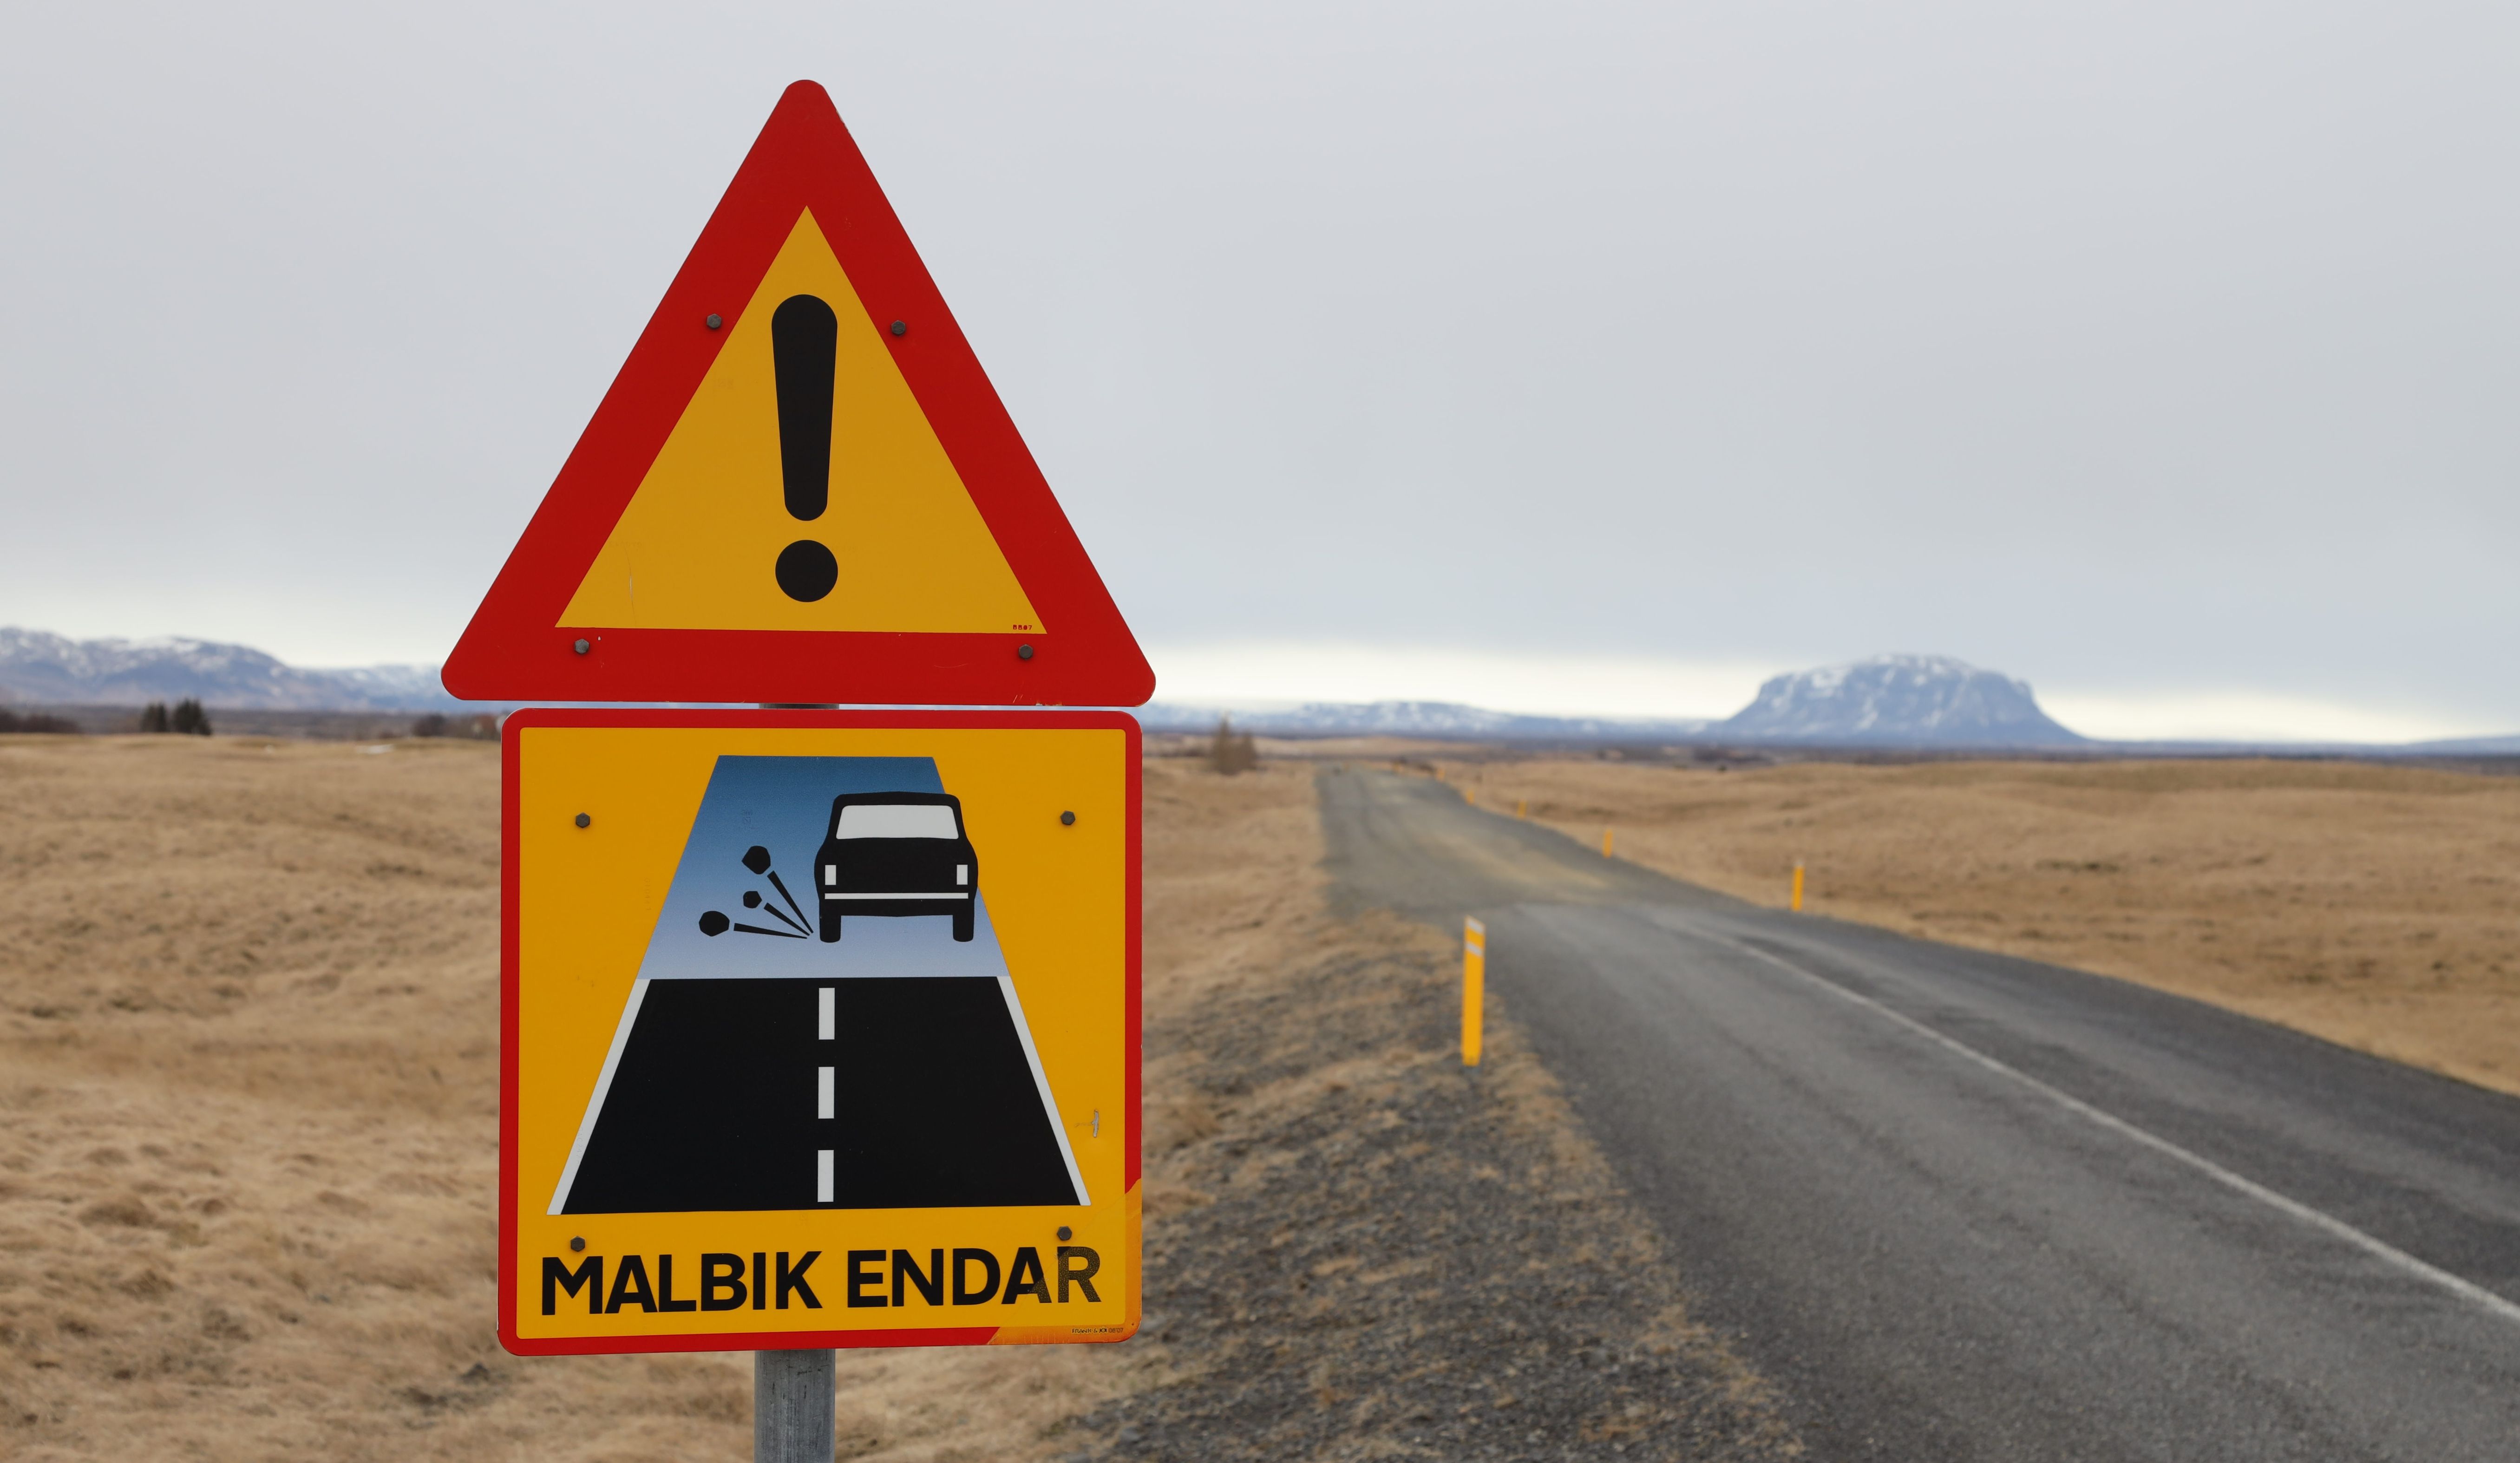 MALBIK ENDAR SIGN MEANING ICELAND.jpg